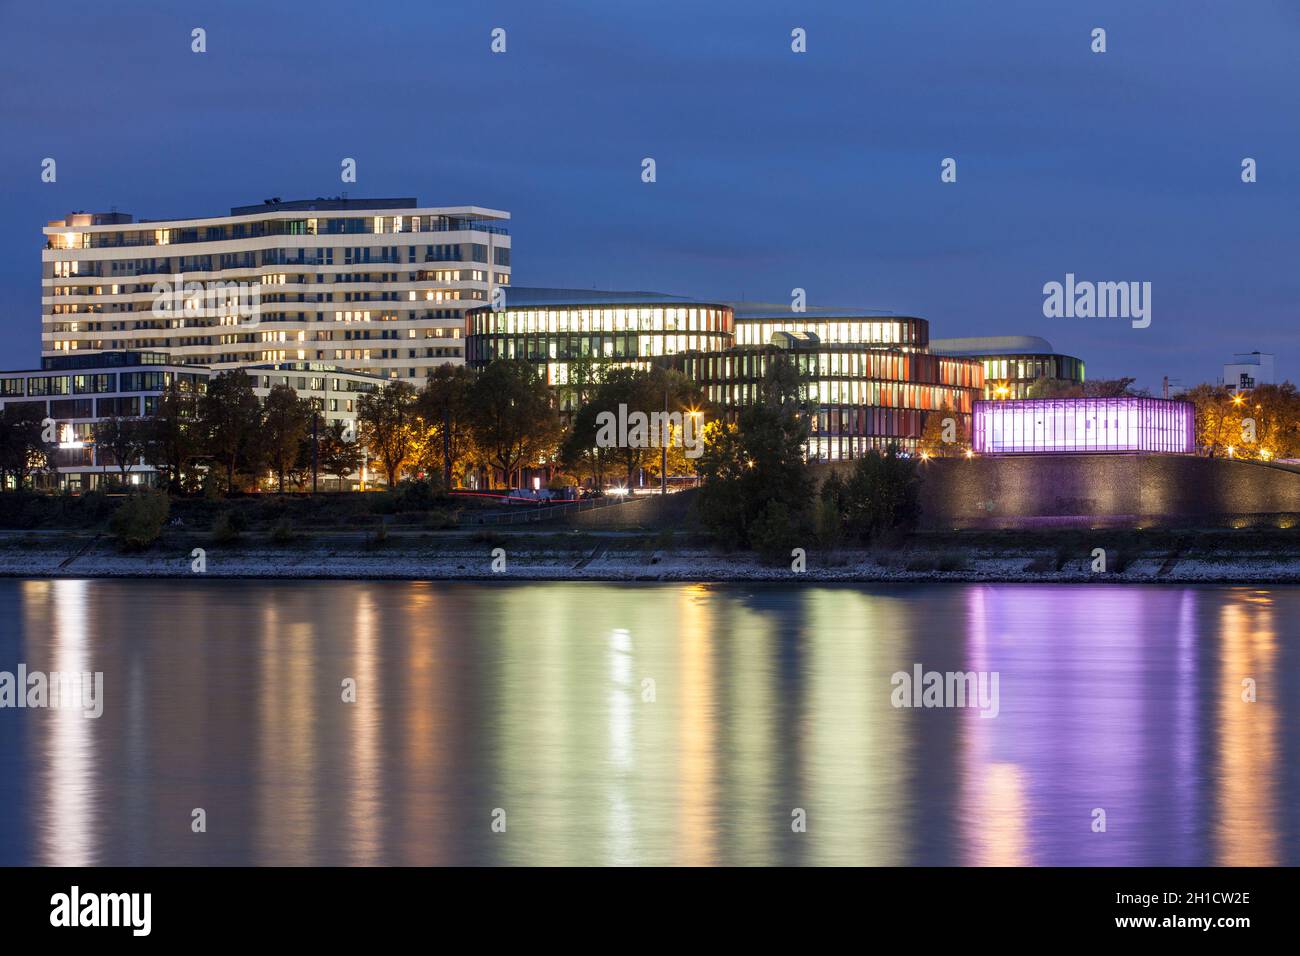 Vue sur le Rhin jusqu'à l'immeuble Flow Tower, le bâtiment de bureau de Cologne Oval Offices et le puits de pompage lumineux magenta Banque D'Images